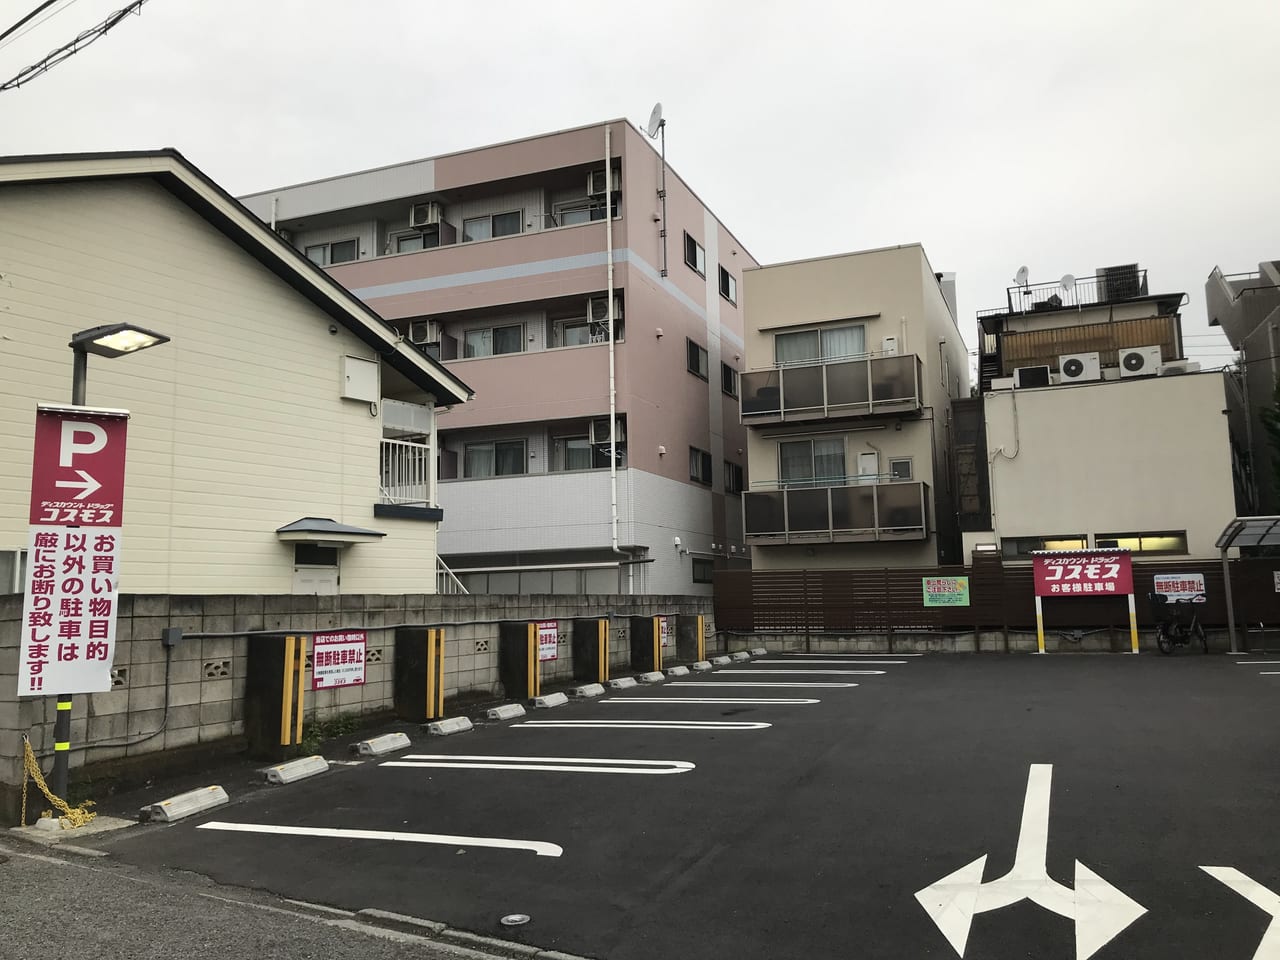 世田谷区上野毛ディスカウントドラッグコスモス上野毛店では、駐車場が車12台分になり、エントランスも中央になって、より一層便利にリニューアルしました。